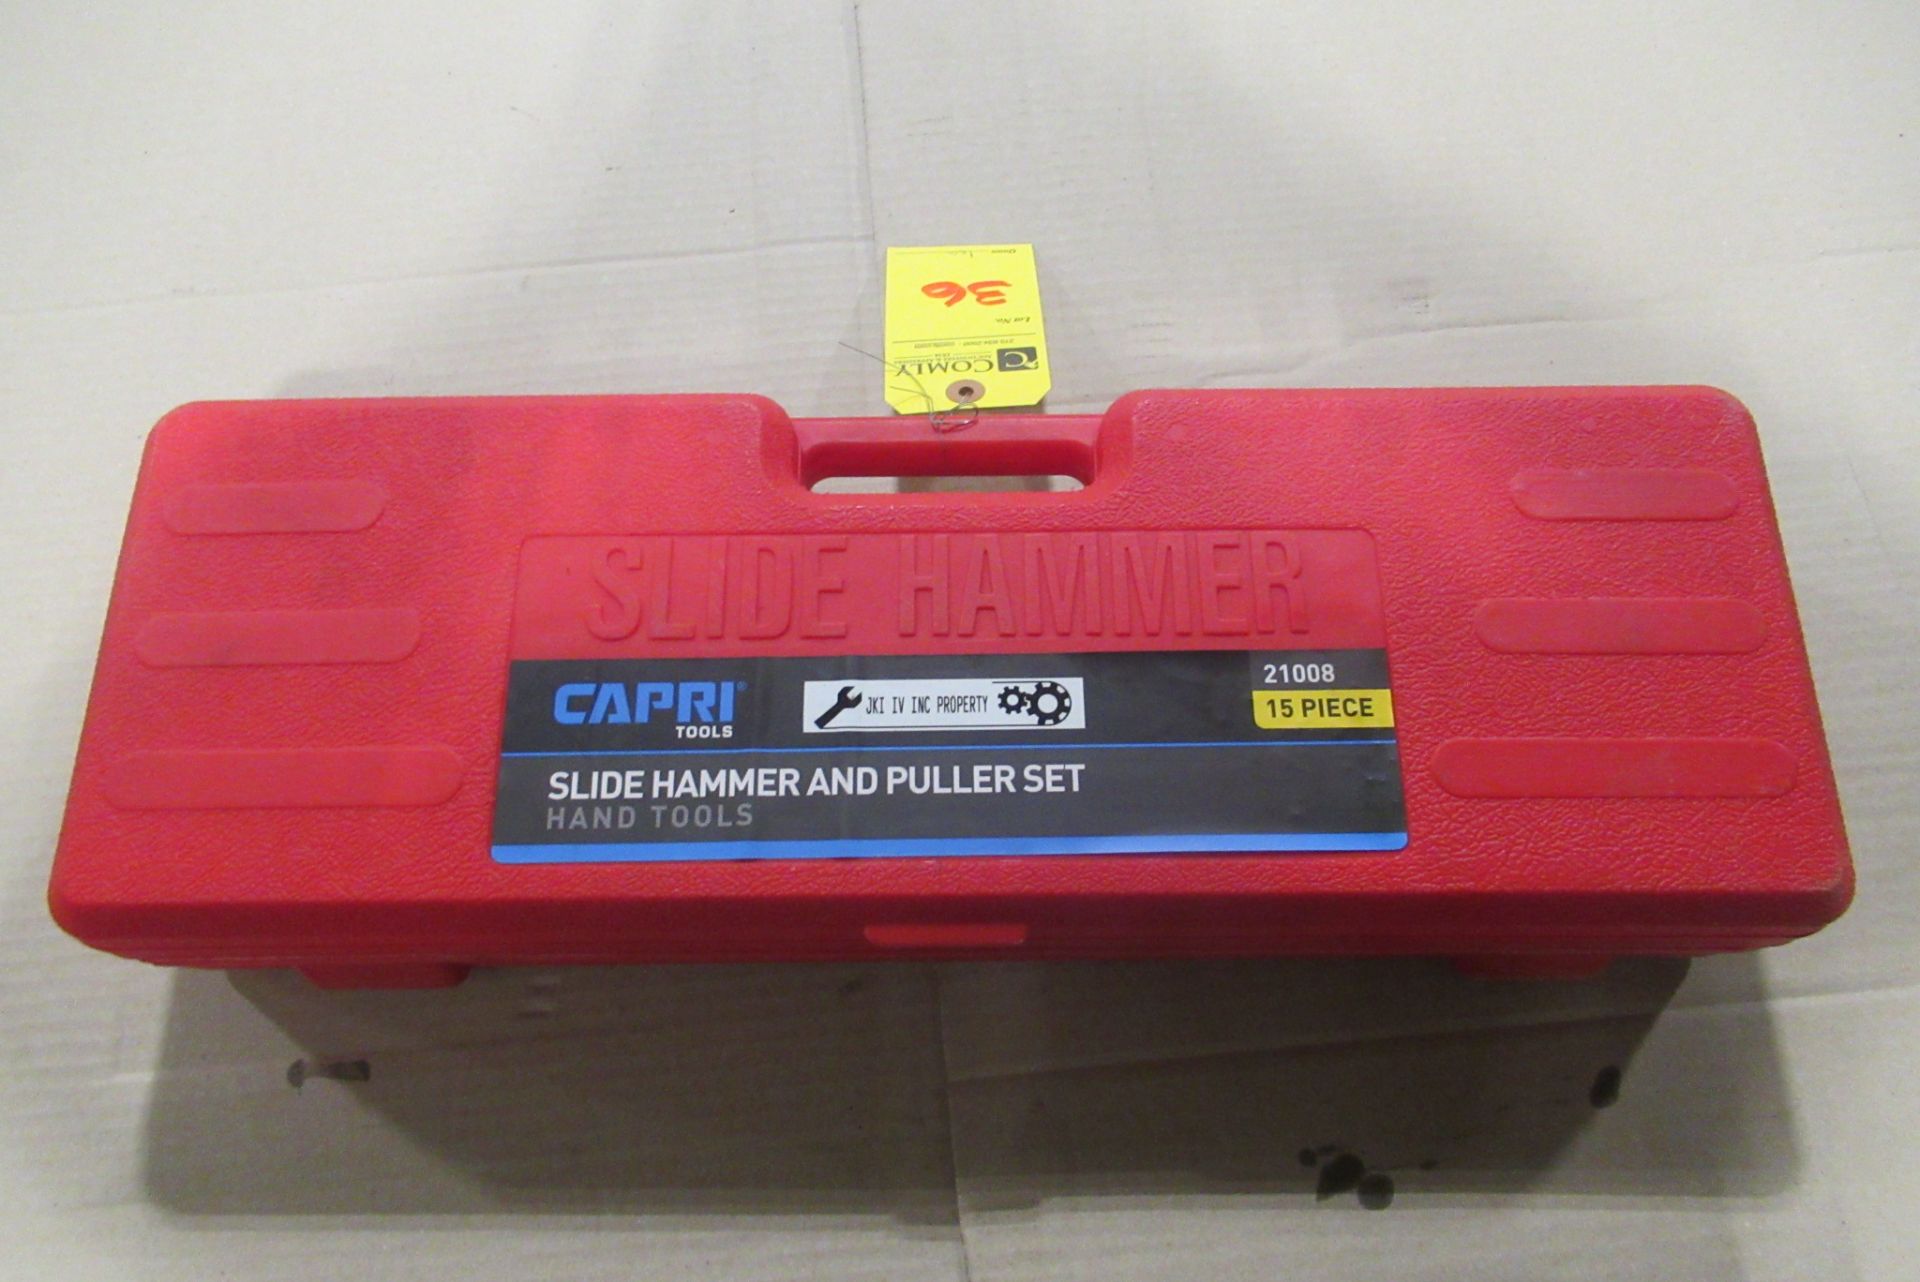 Capri Slide Hammer & Puller Set - Image 2 of 2